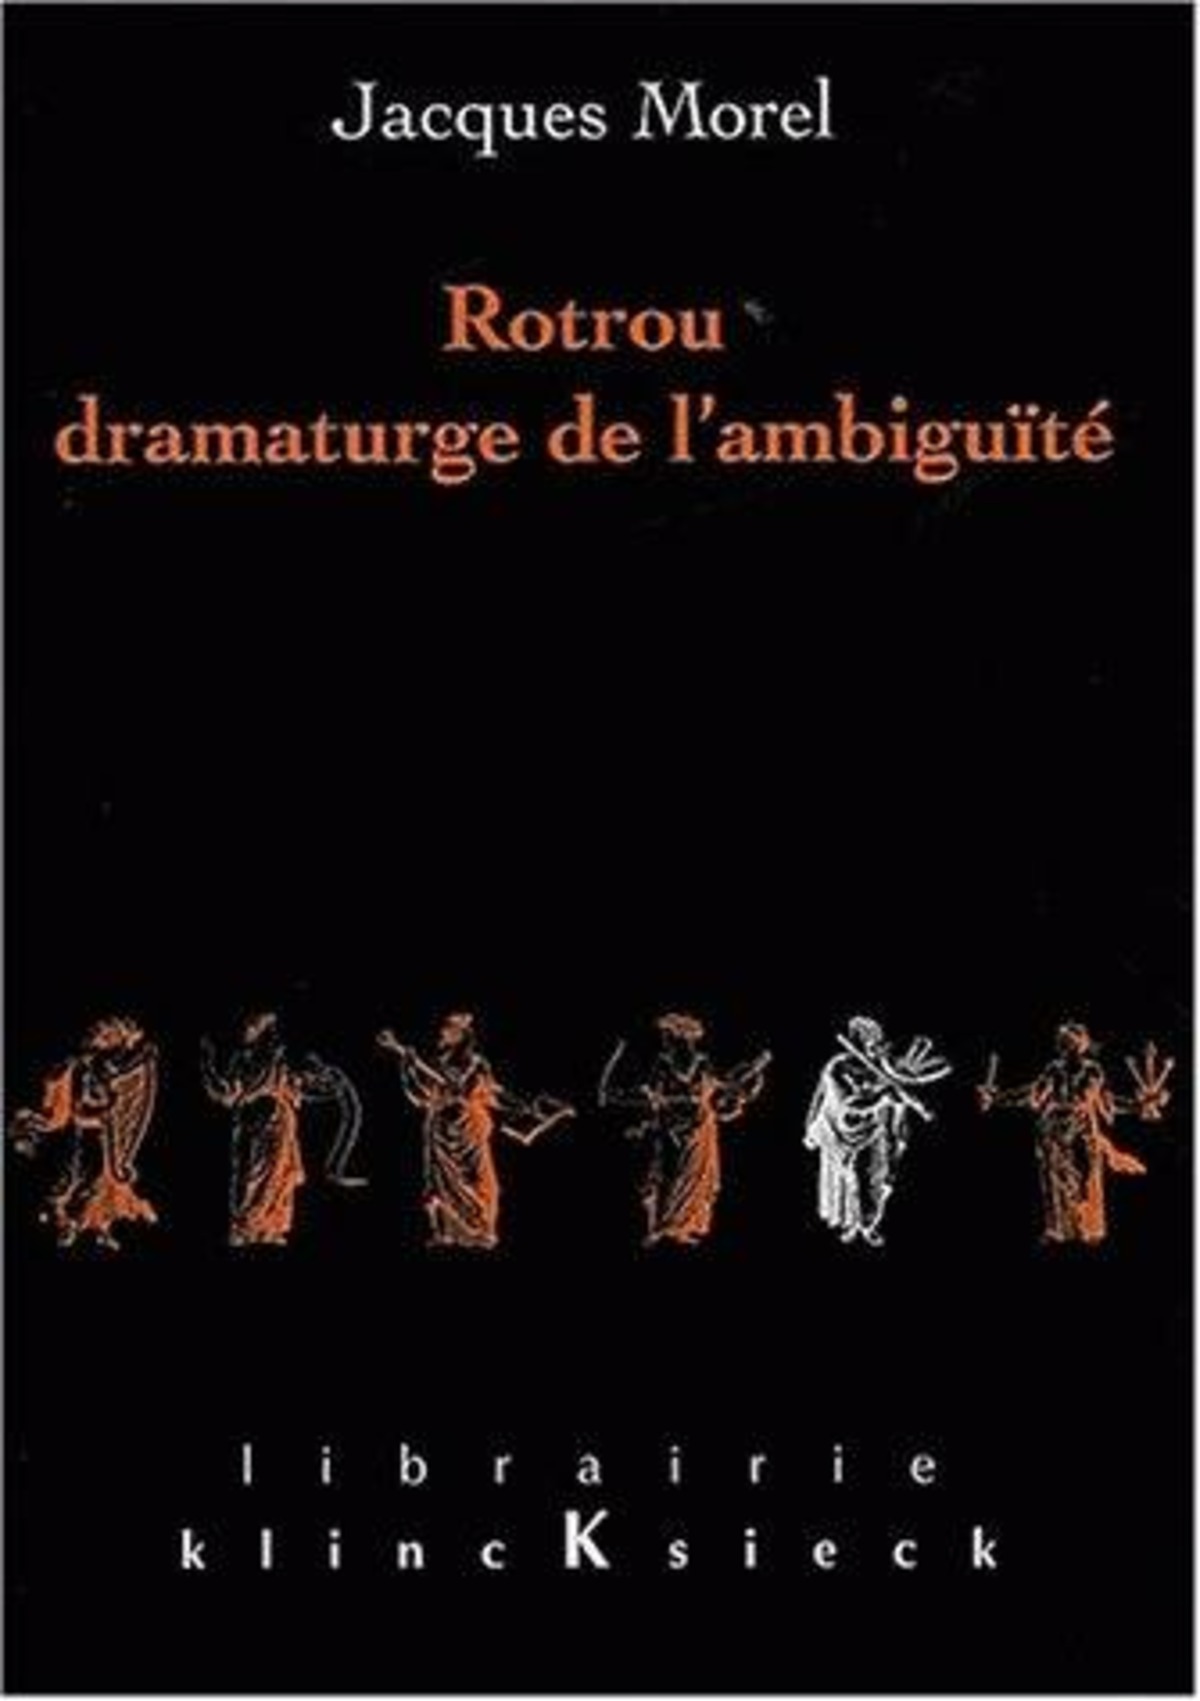 Rotrou, dramaturge de l'ambiguïté